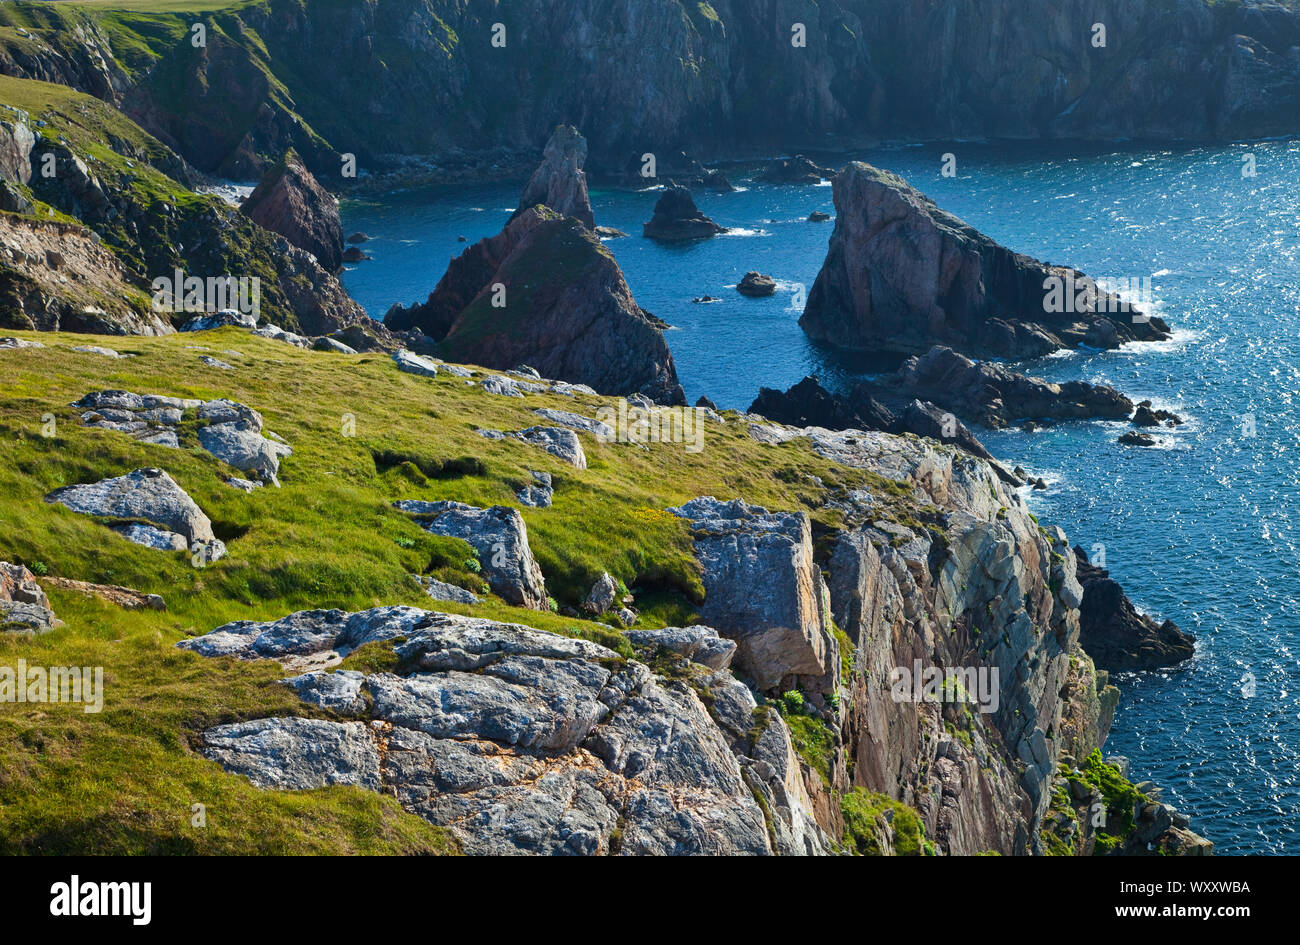 Paisaje Costero (Coastal Landscape). Lag Ma Leatha. Southwest Lewis island. Outer Hebrides. Scotland, UK Stock Photo